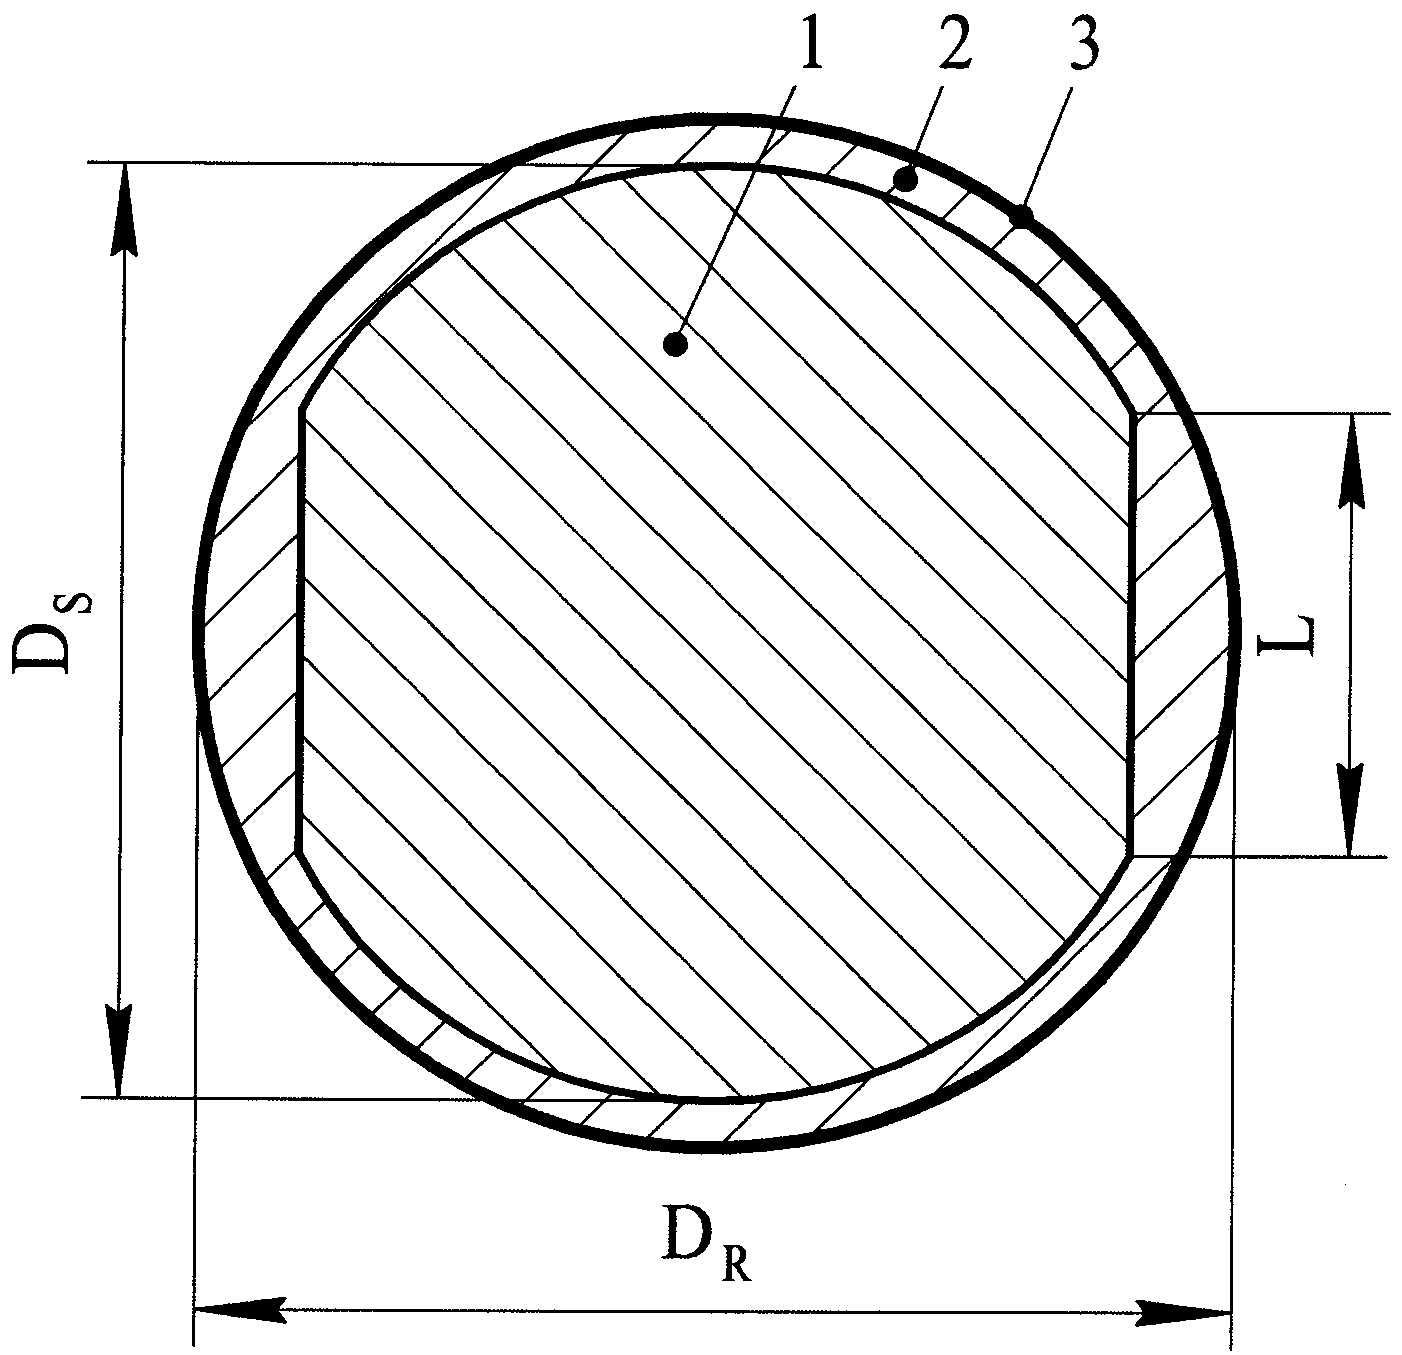 Способ изготовления сферического ротора криогенного гироскопа